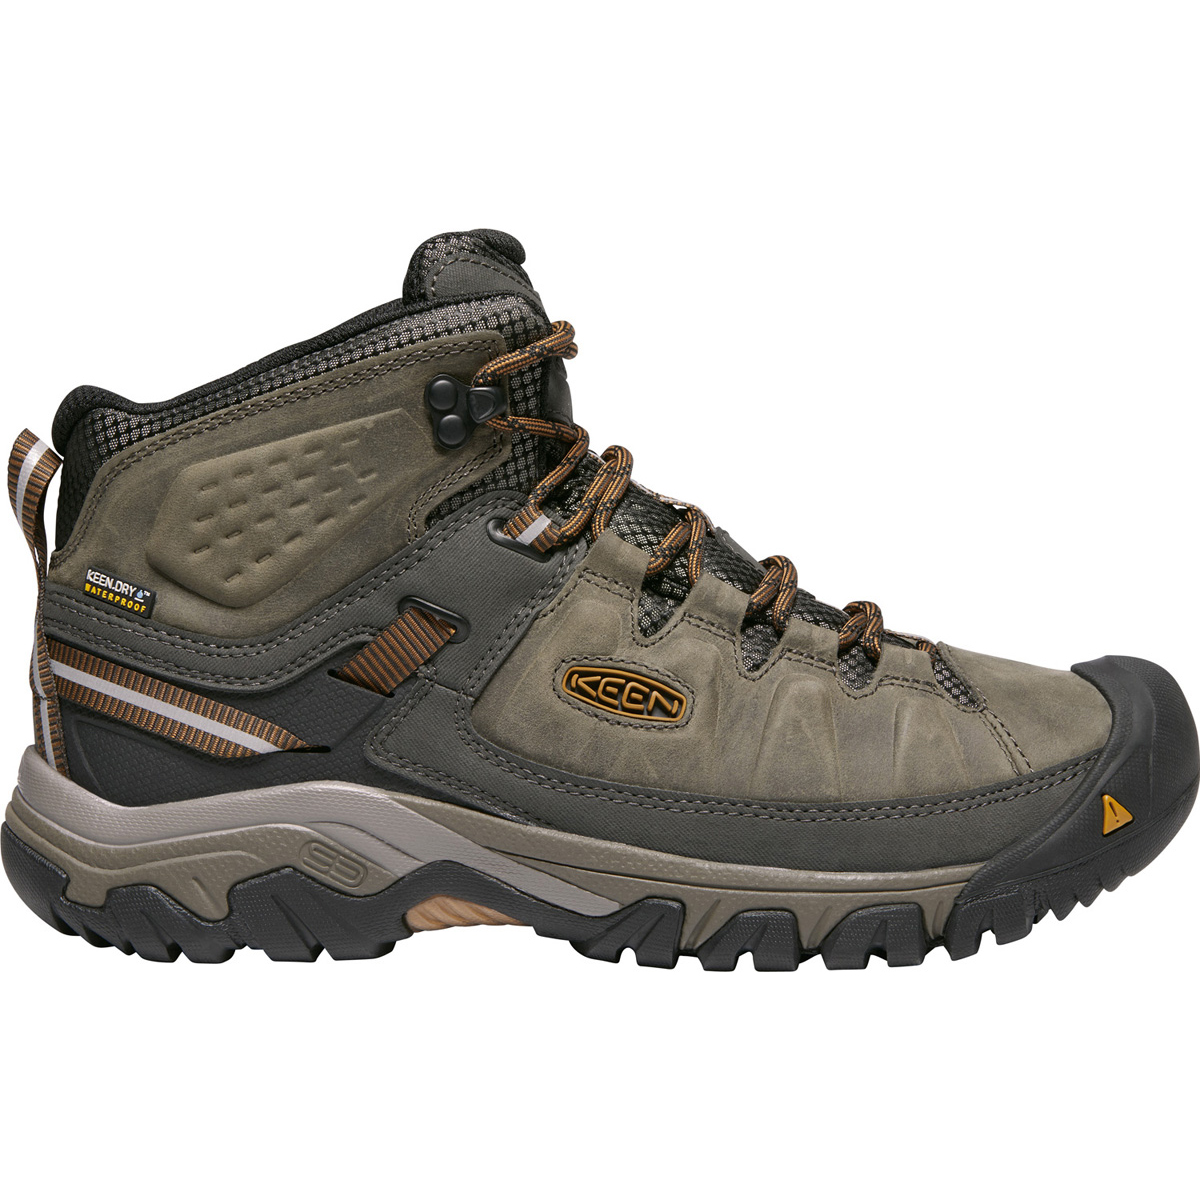 Keen Men's Targhee Iii Waterproof Mid Hiking Boots